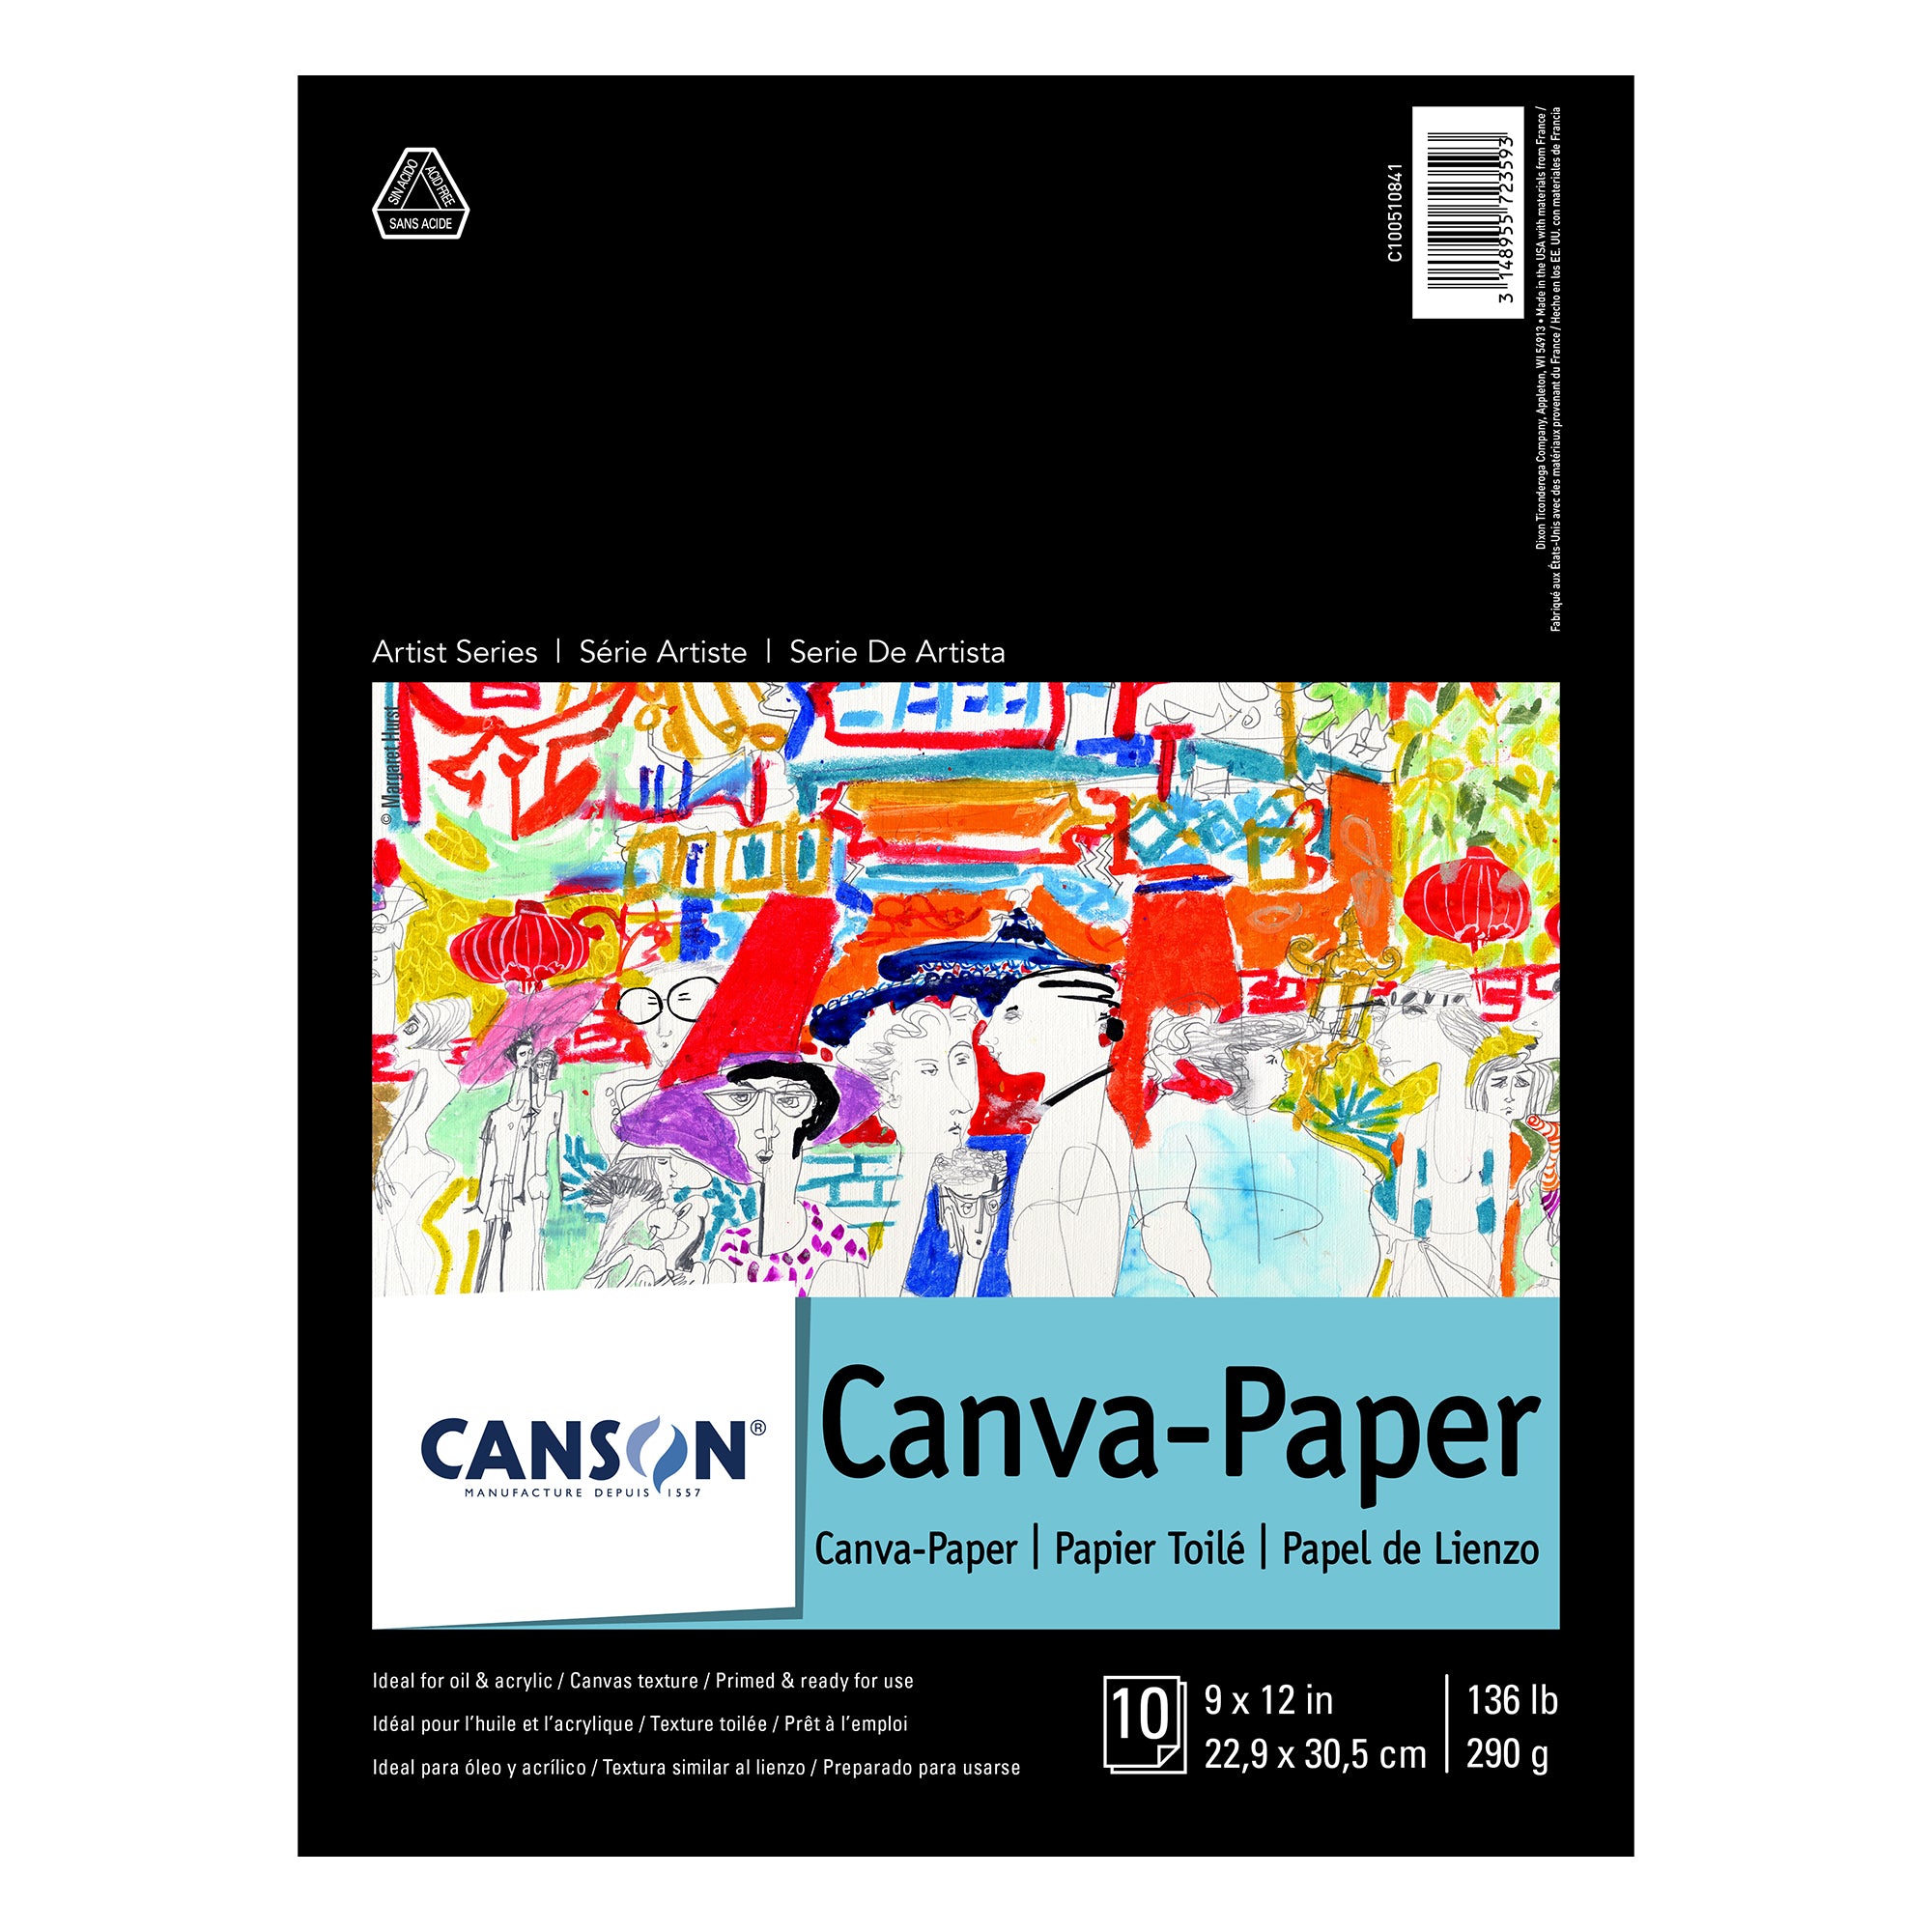 Canson XL Disposable Palette Paper – Jerrys Artist Outlet